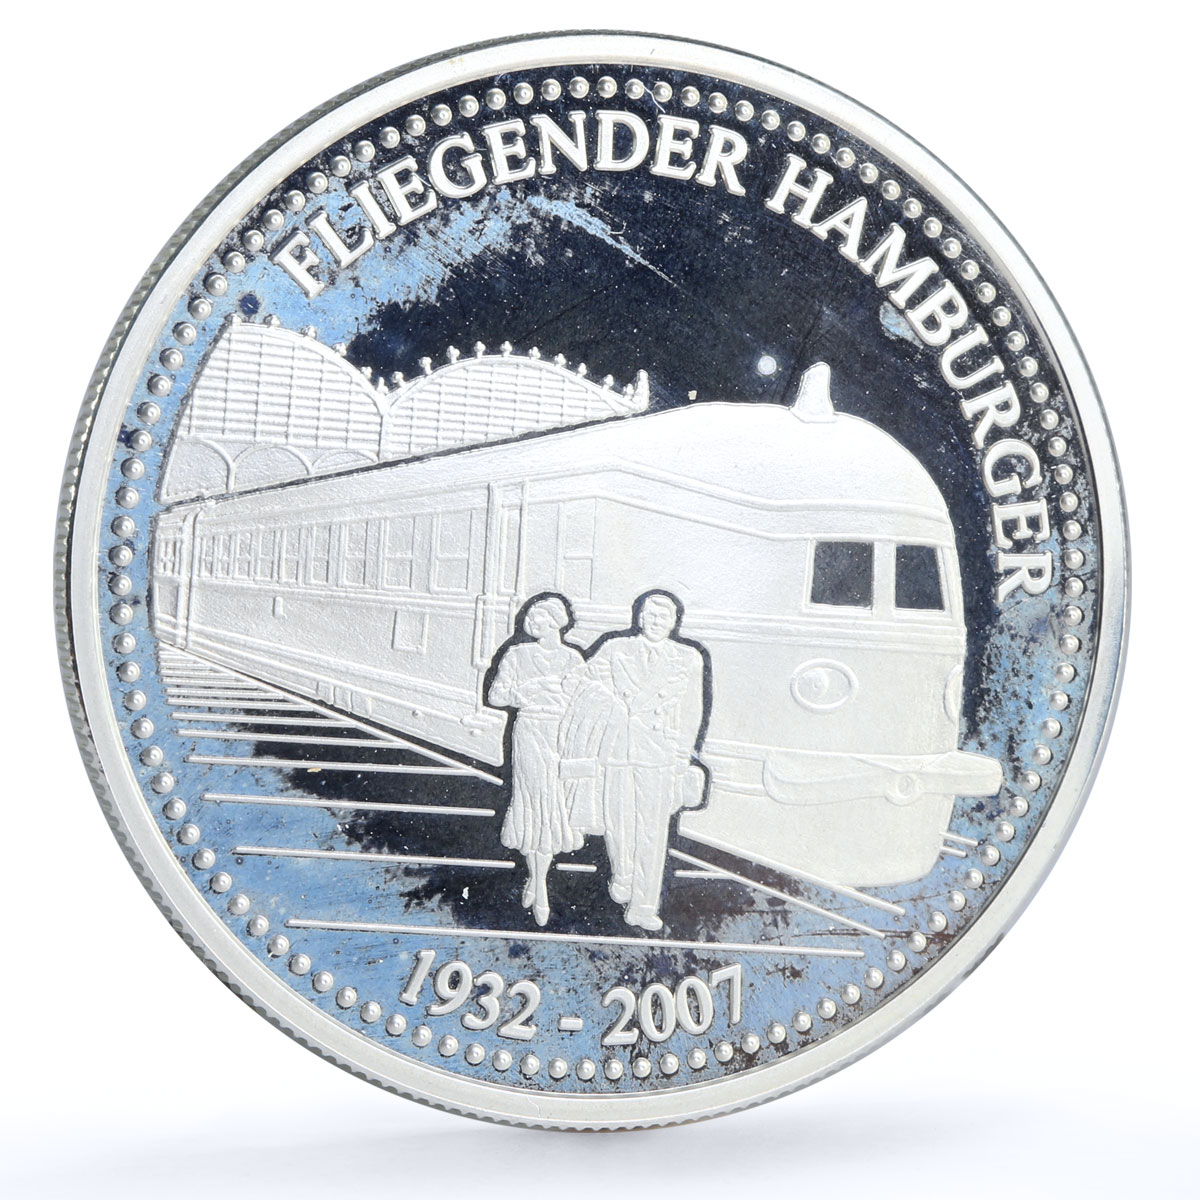 Togo 1000 francs Trains Railways Fliegende Hamburger Locomotive silver coin 2007